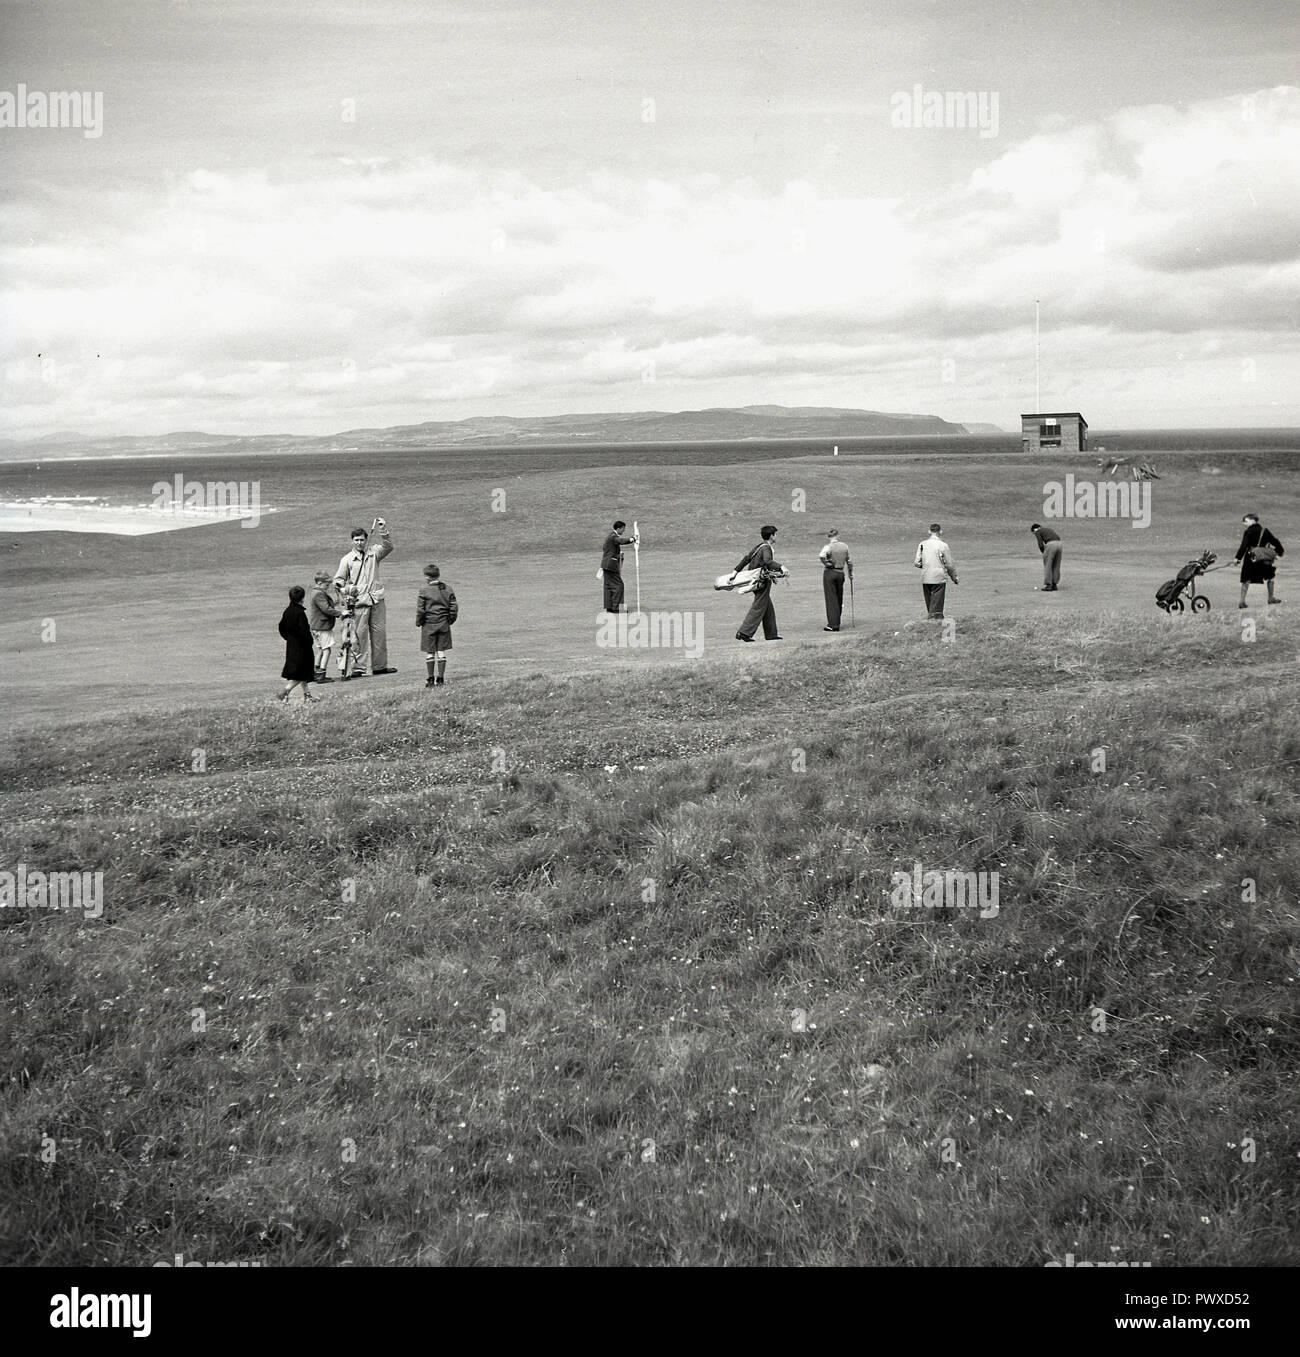 Années 1950, historiques, golf, golf, golfeurs masculins jouant sur un parcours côtier sur le putting green, avec leurs petits caddies présents en Irlande du Nord, Royaume-Uni. Banque D'Images